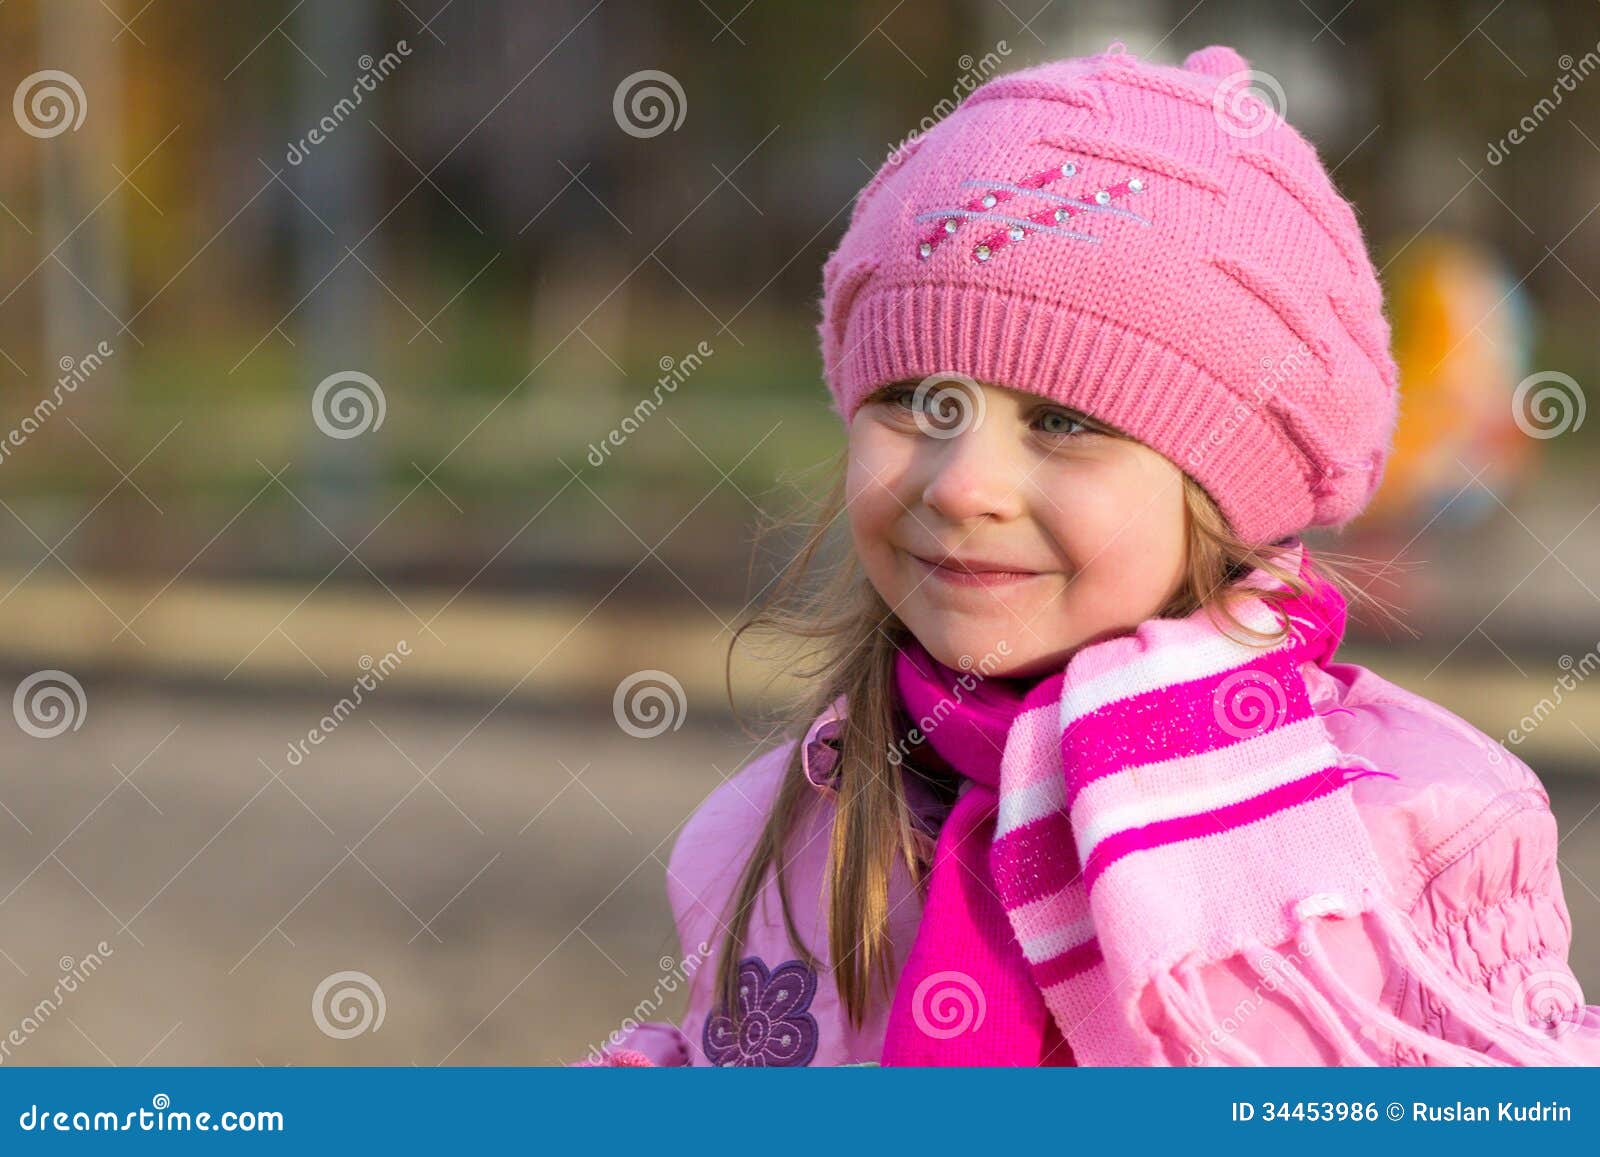 Portret Van Een Klein Meisje in Een Roze Hoed Stock Foto - Image of ...